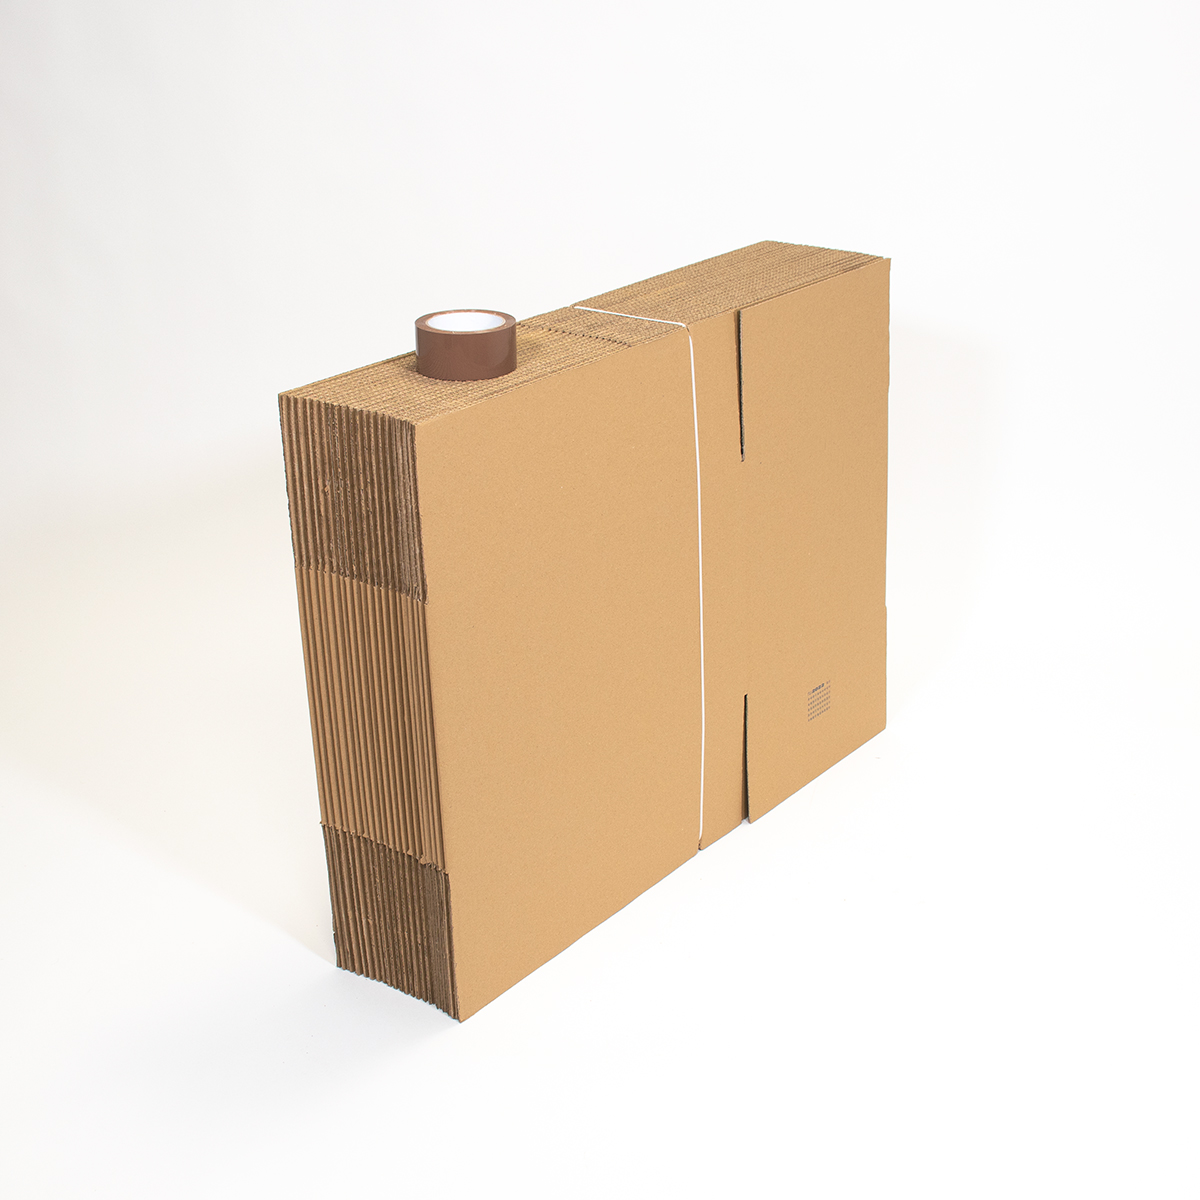 Achat disque carton or pas cher, support en carton pour gateau et